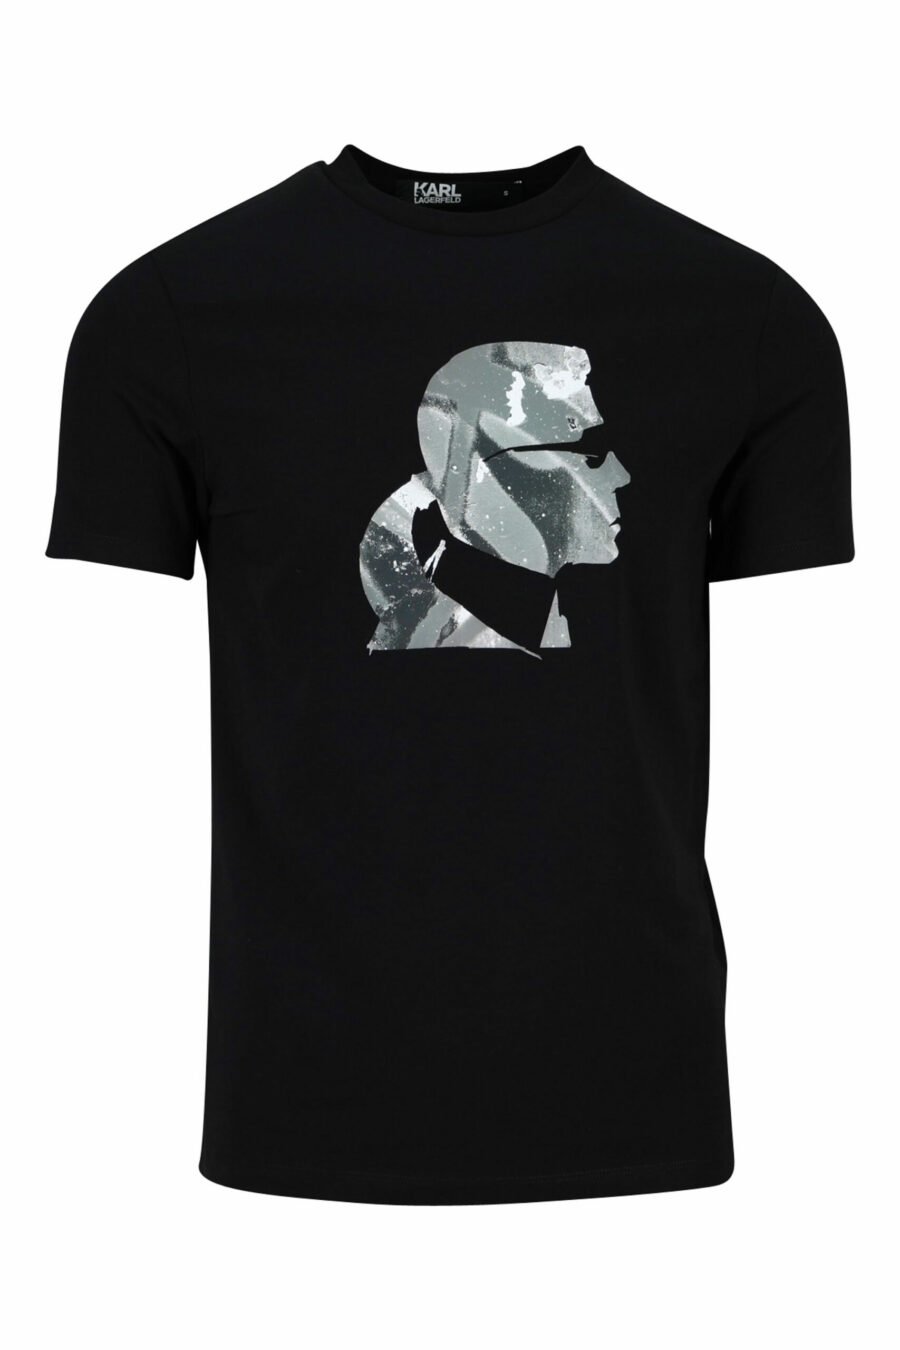 Camiseta negra con maxilogo "karl" perfil camuflado - 4062226401906 scaled